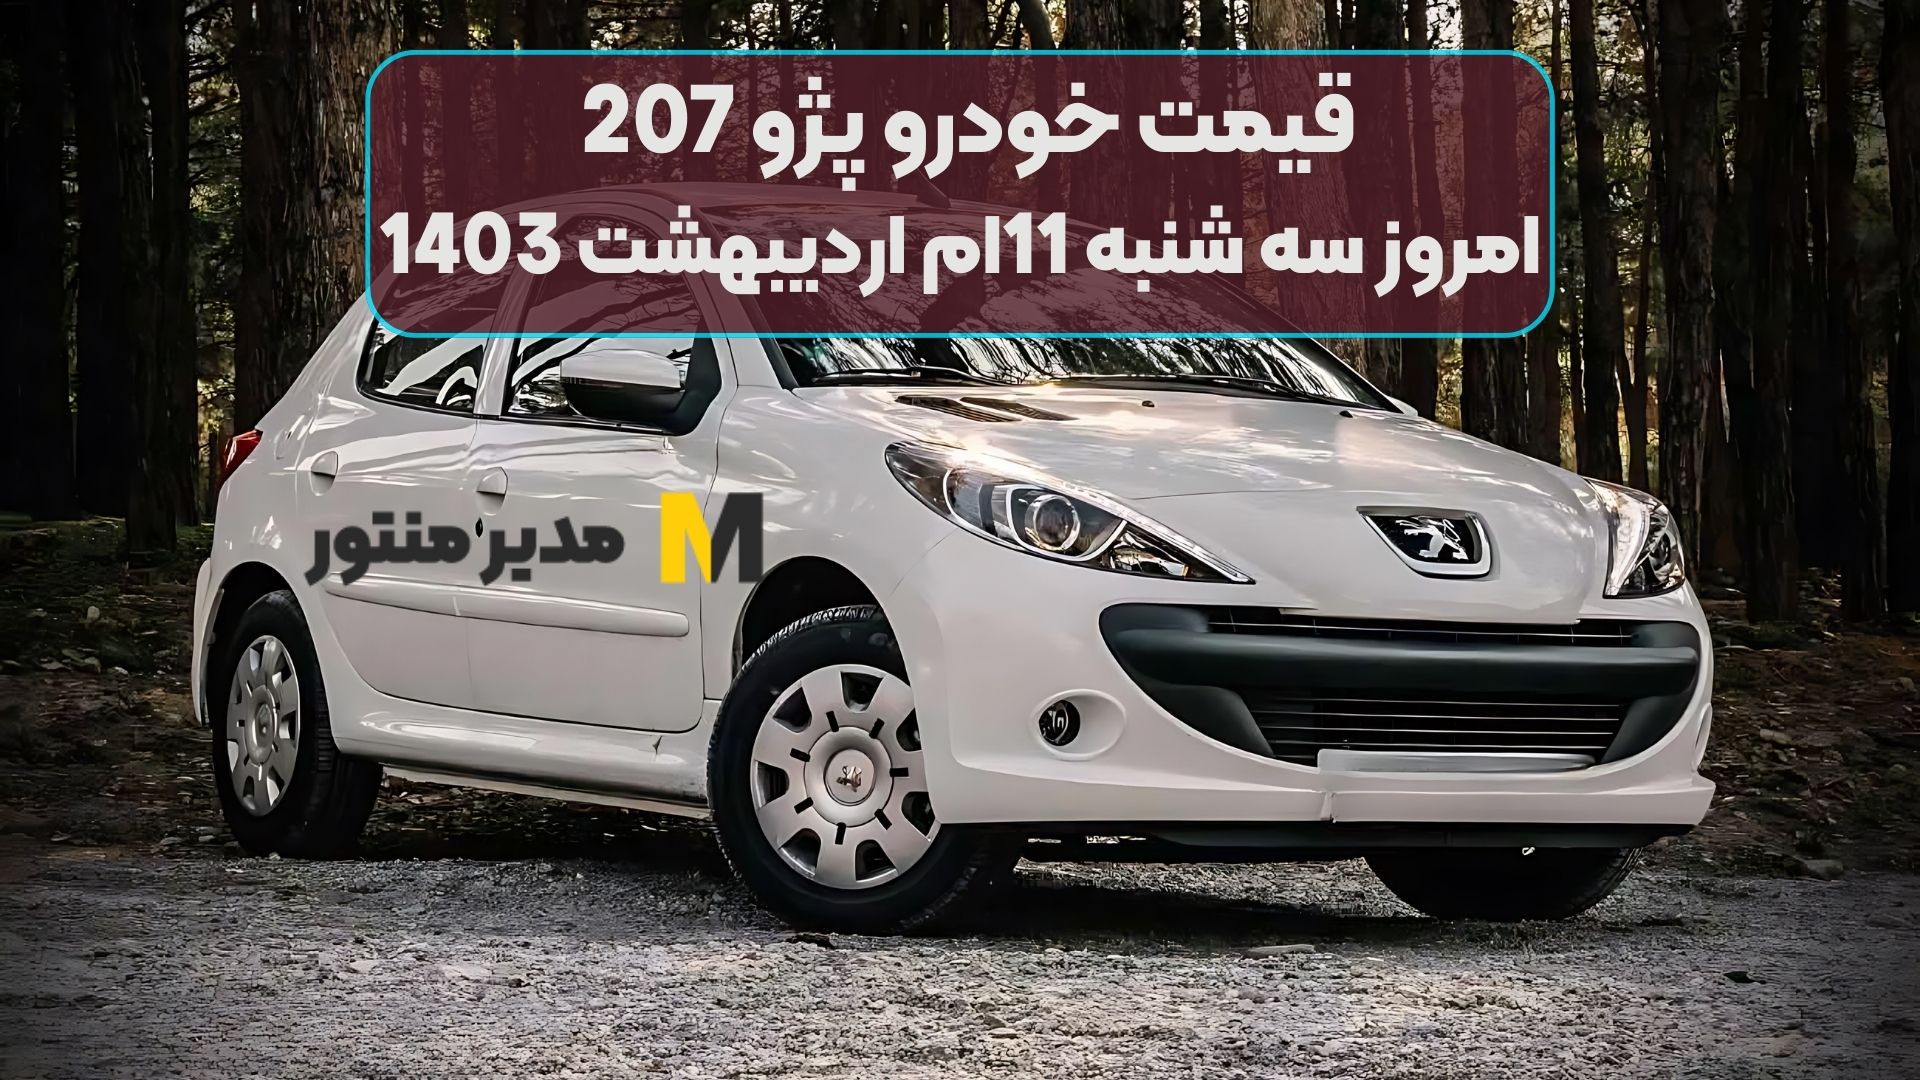 قیمت خودرو پژو 207 امروز سه شنبه 11ام اردیبهشت 1403